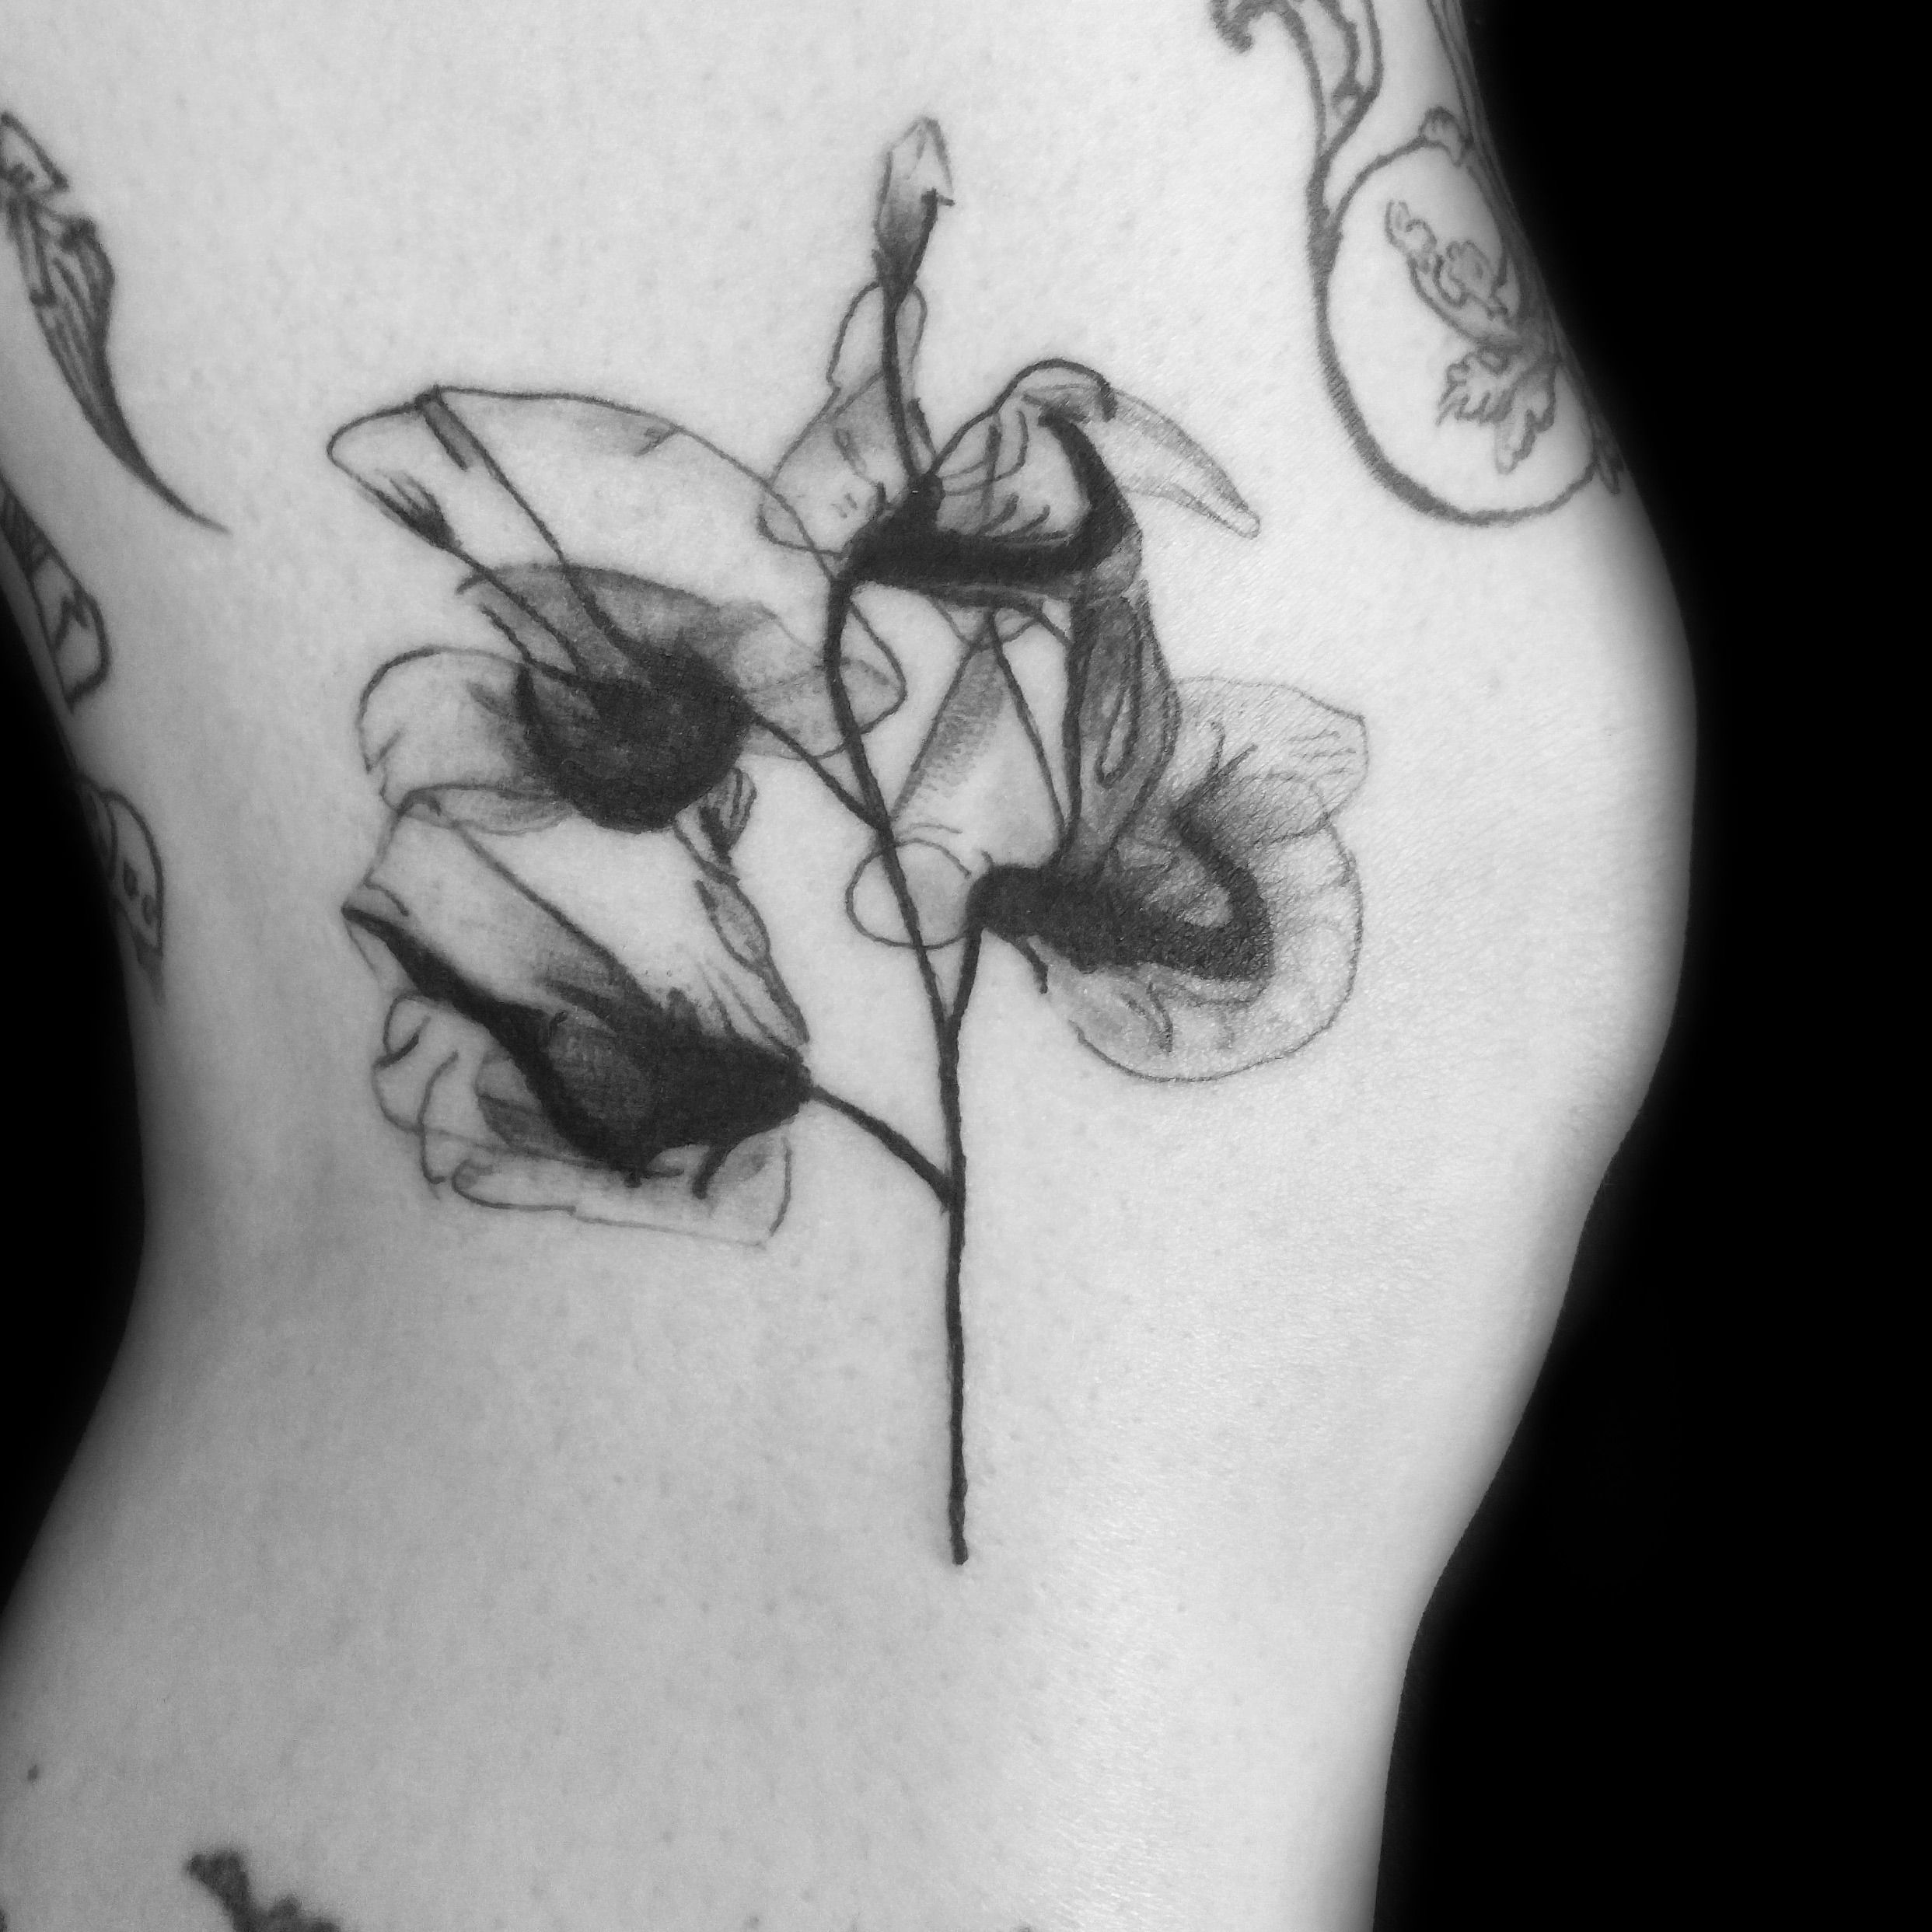 Tattoo uploaded by Poison . Tattoo Parlour • Sweet pea flower #sweetpea  #xray #xtaytattoo #flowers #ornamentaltattoo #lineworktattoo  #blackinktattoo # • Tattoodo